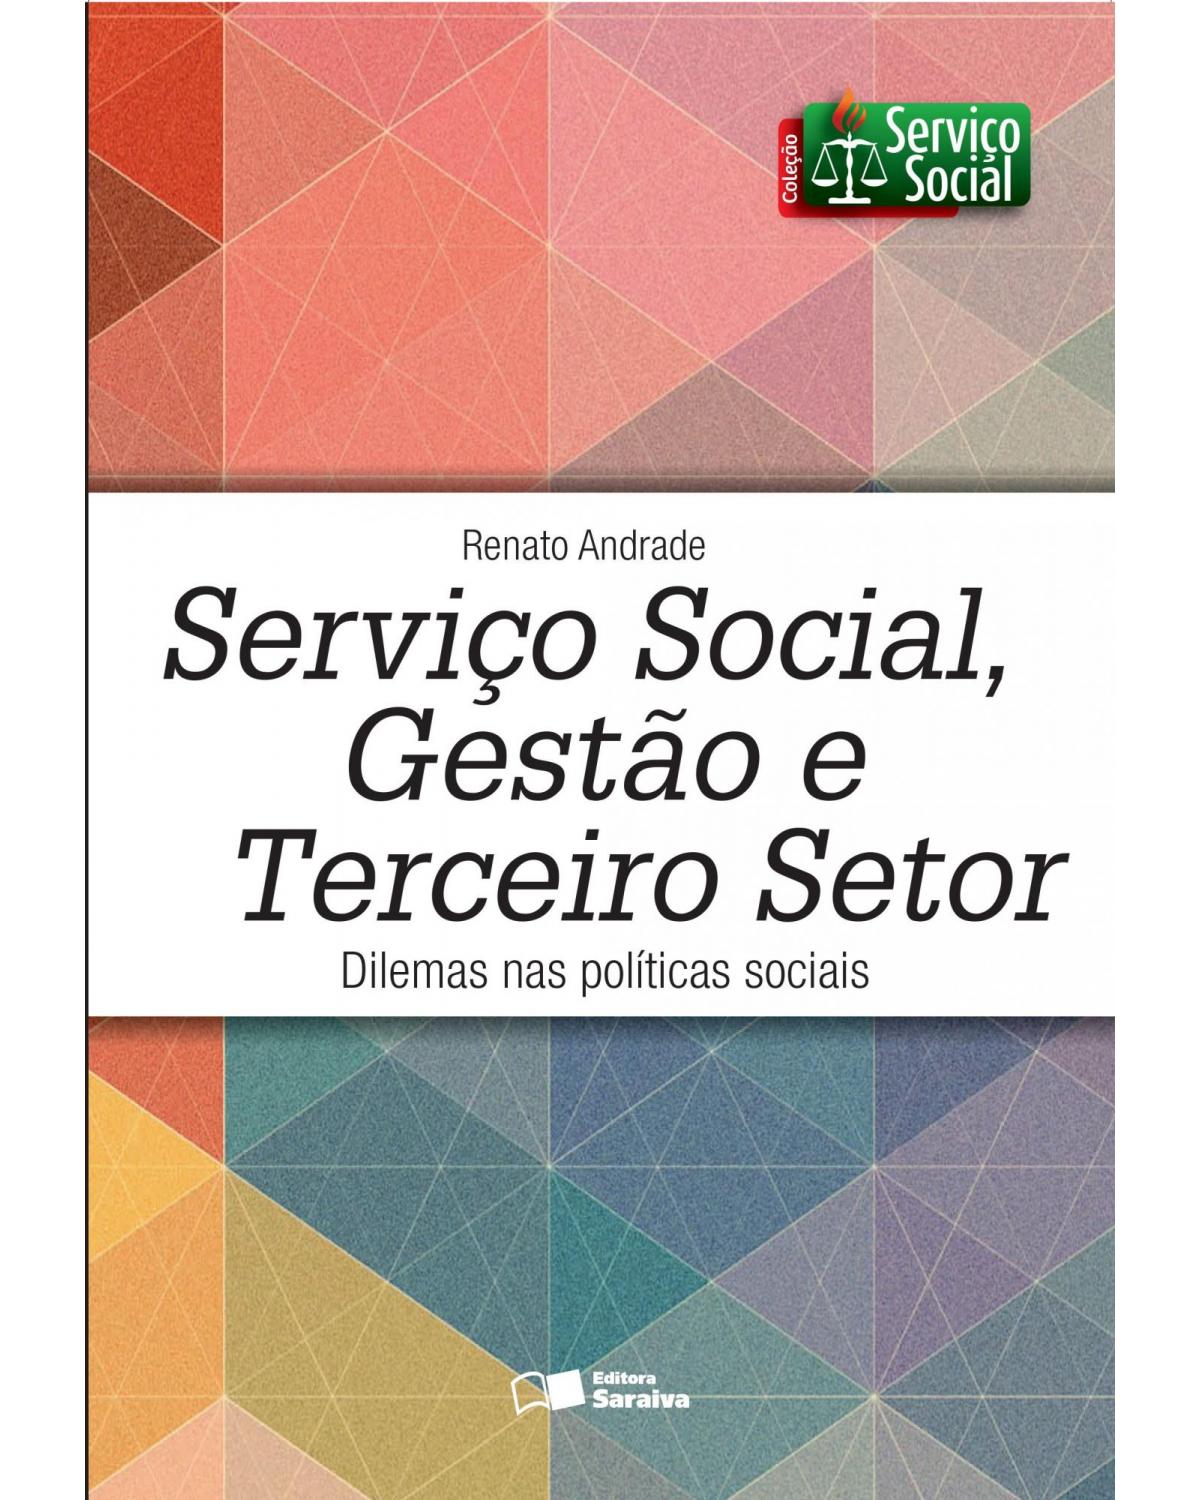 Serviço social, gestão e terceiro setor - dilemas nas políticas sociais - 1ª Edição | 2015